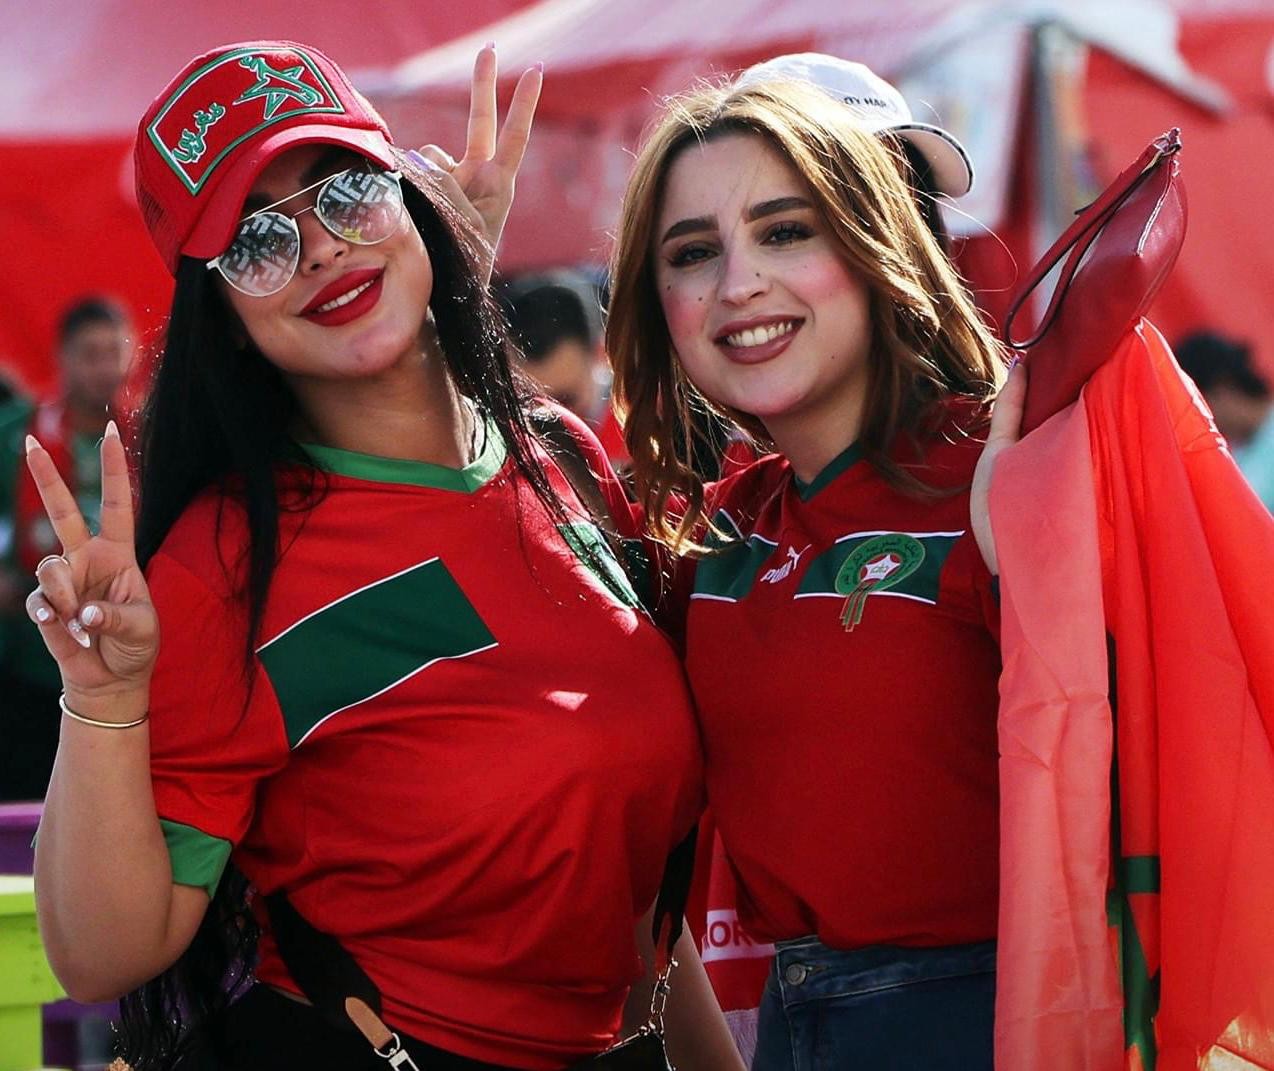 فيديو وصور: المغرب يفوز على بلجيكا في مباراة رائعة